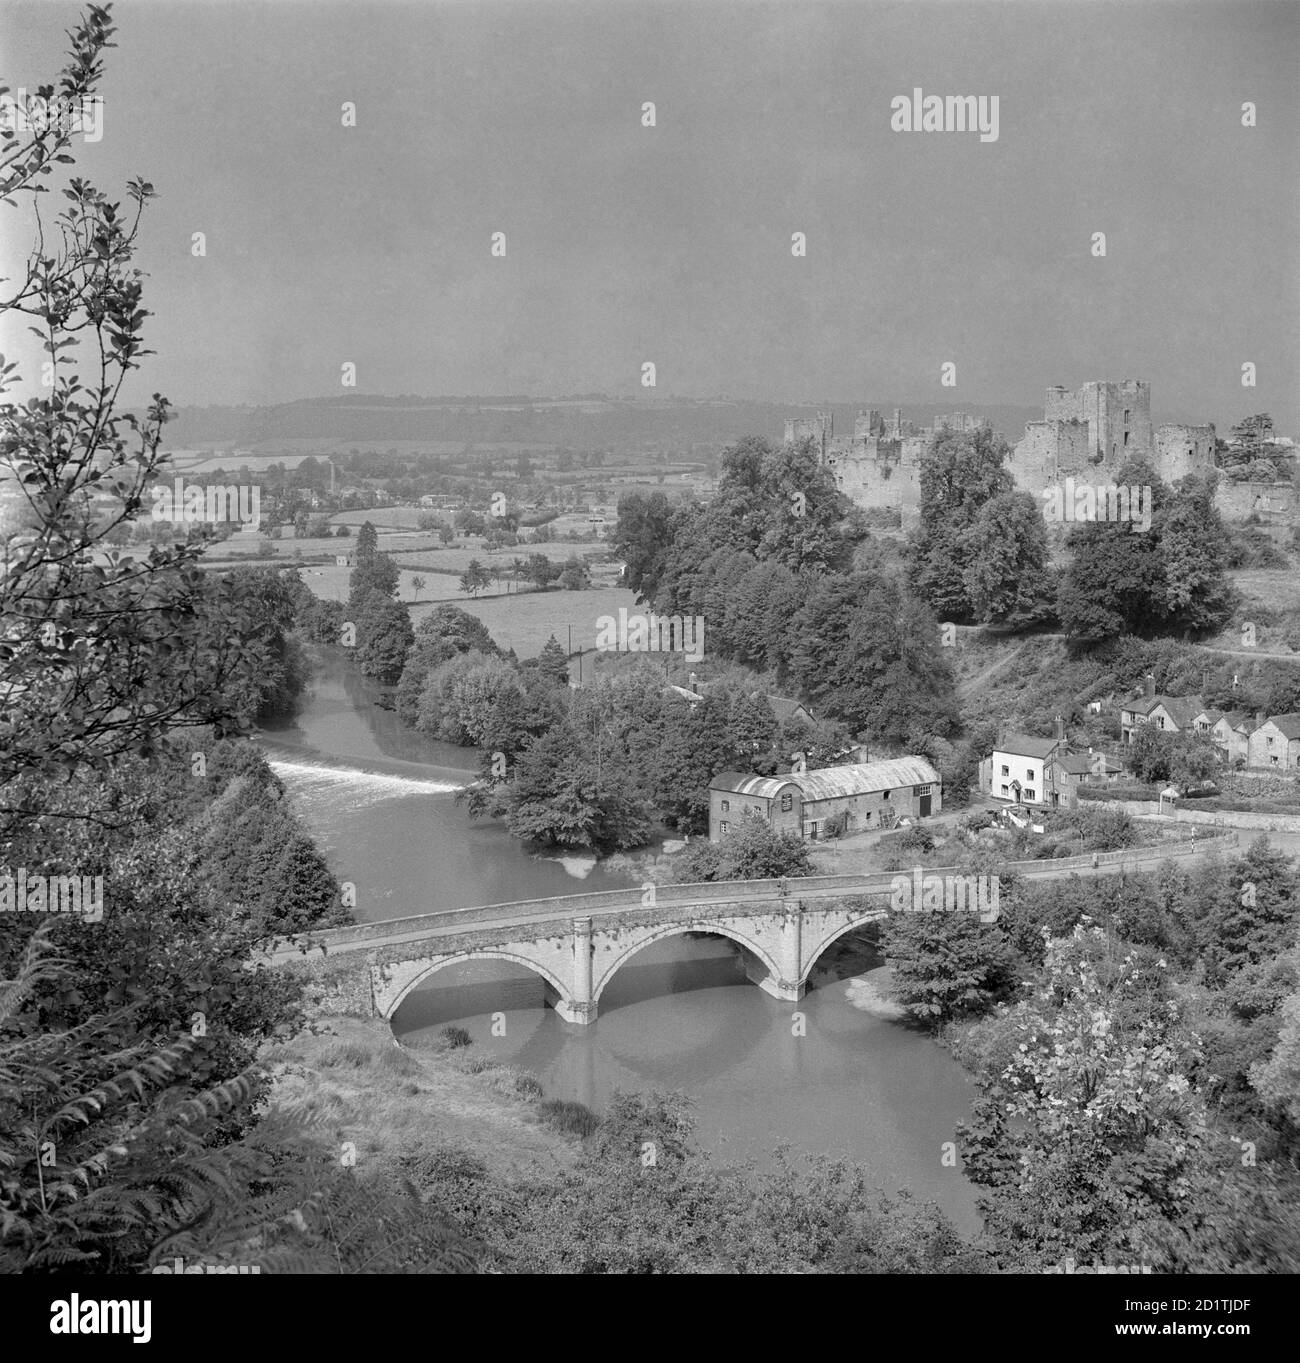 PONT DE DINHAM, Ludlow, Shropshire. Vue générale à partir d'une position surélevée montrant la rivière Teme au premier plan. Le pont de Dinham à Ludlow a été construit en 1823. La présence imposante du château de Ludlow peut être vue en arrière-plan. Photographié par Eric de Mare entre 1945 et 1980. Banque D'Images